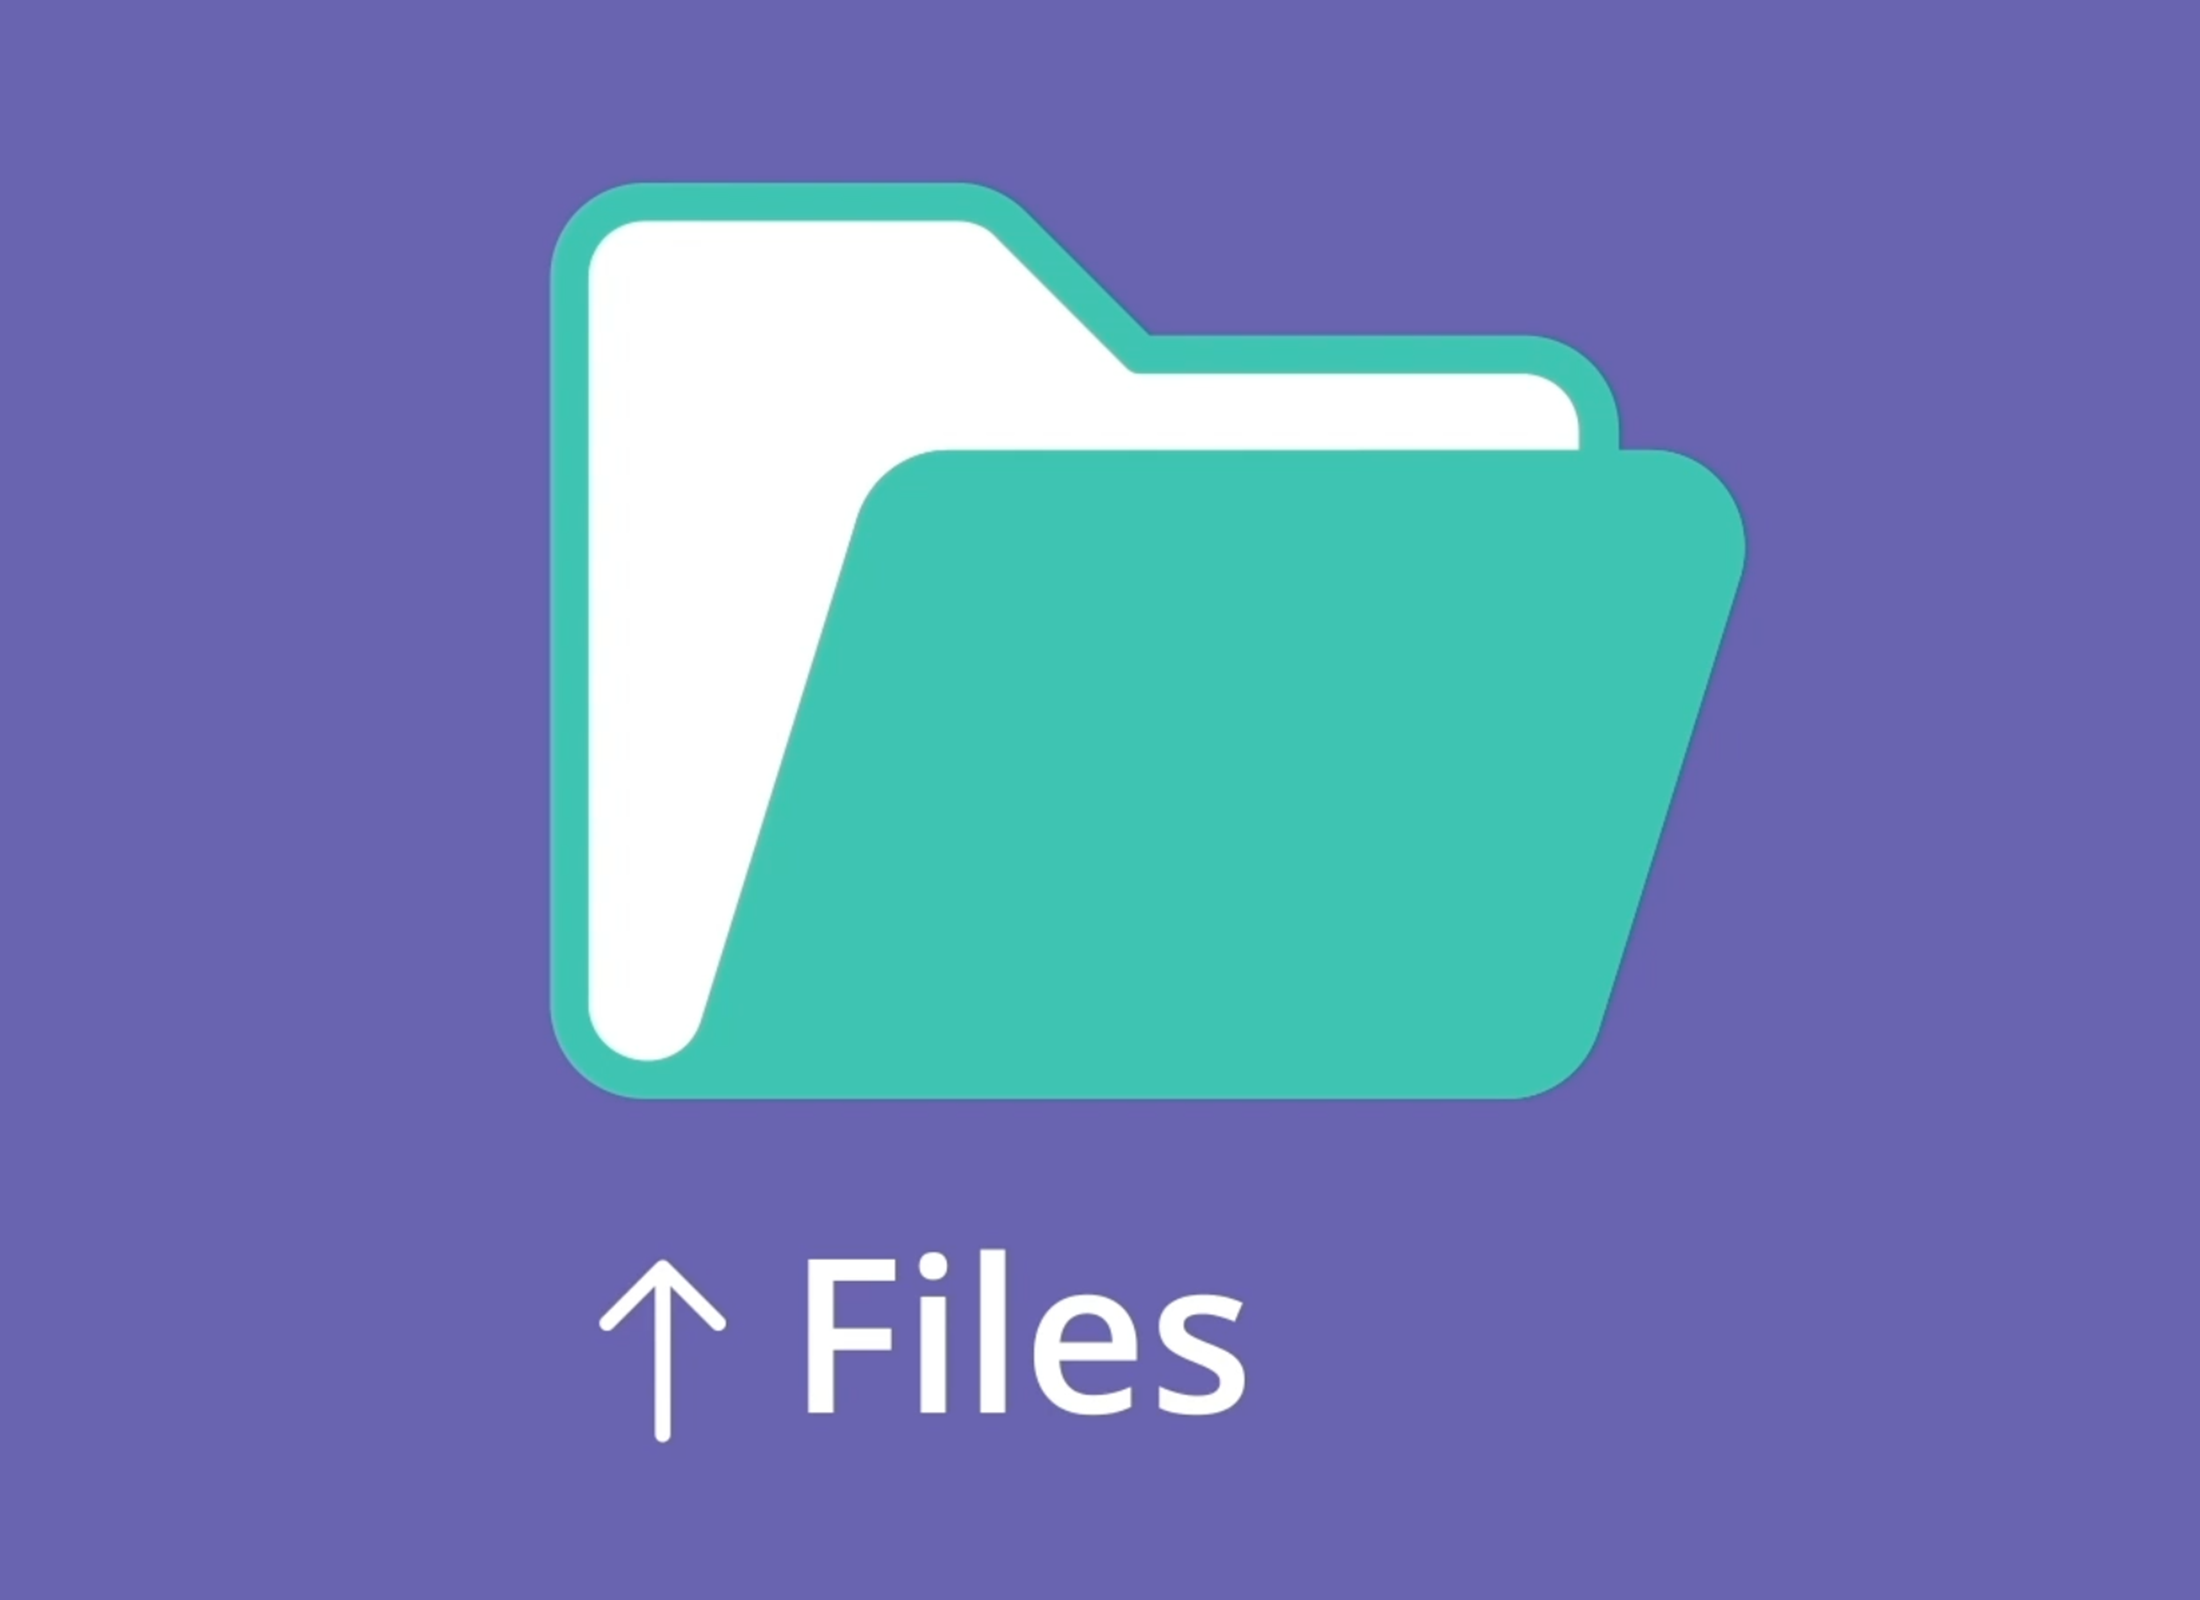 檔案（Files）可以幫忙整理您的文件